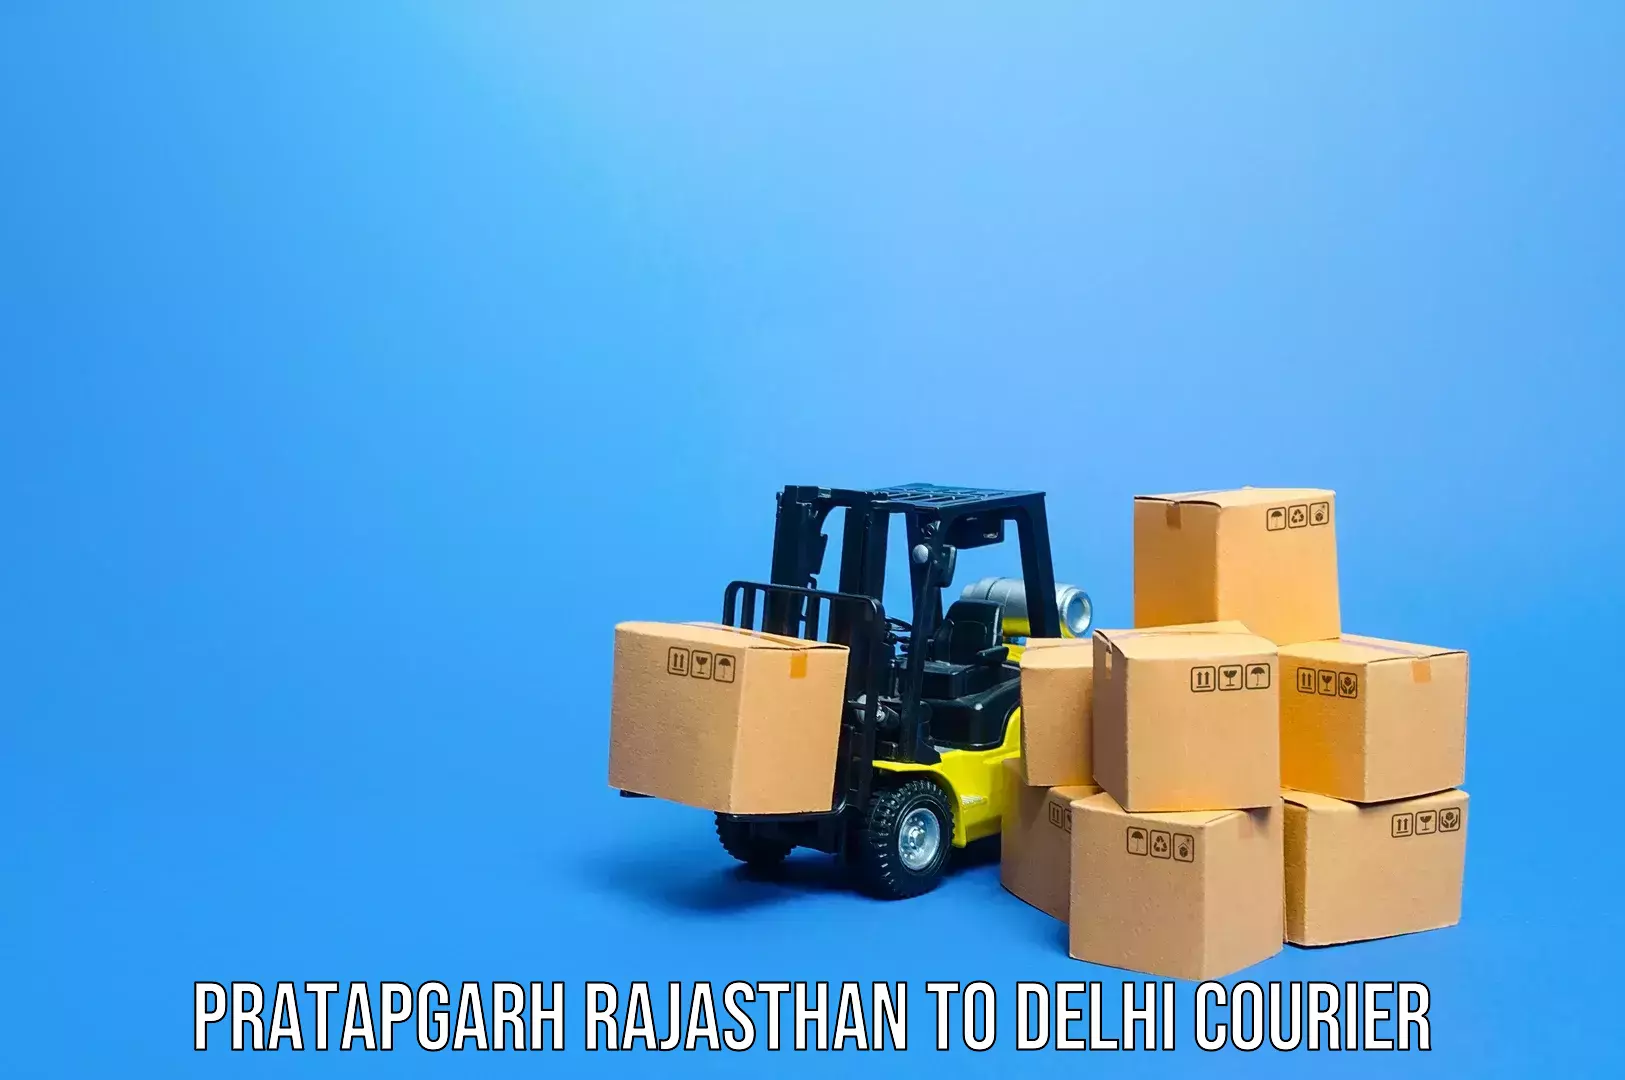 Baggage transport services Pratapgarh Rajasthan to Naraina Industrial Estate